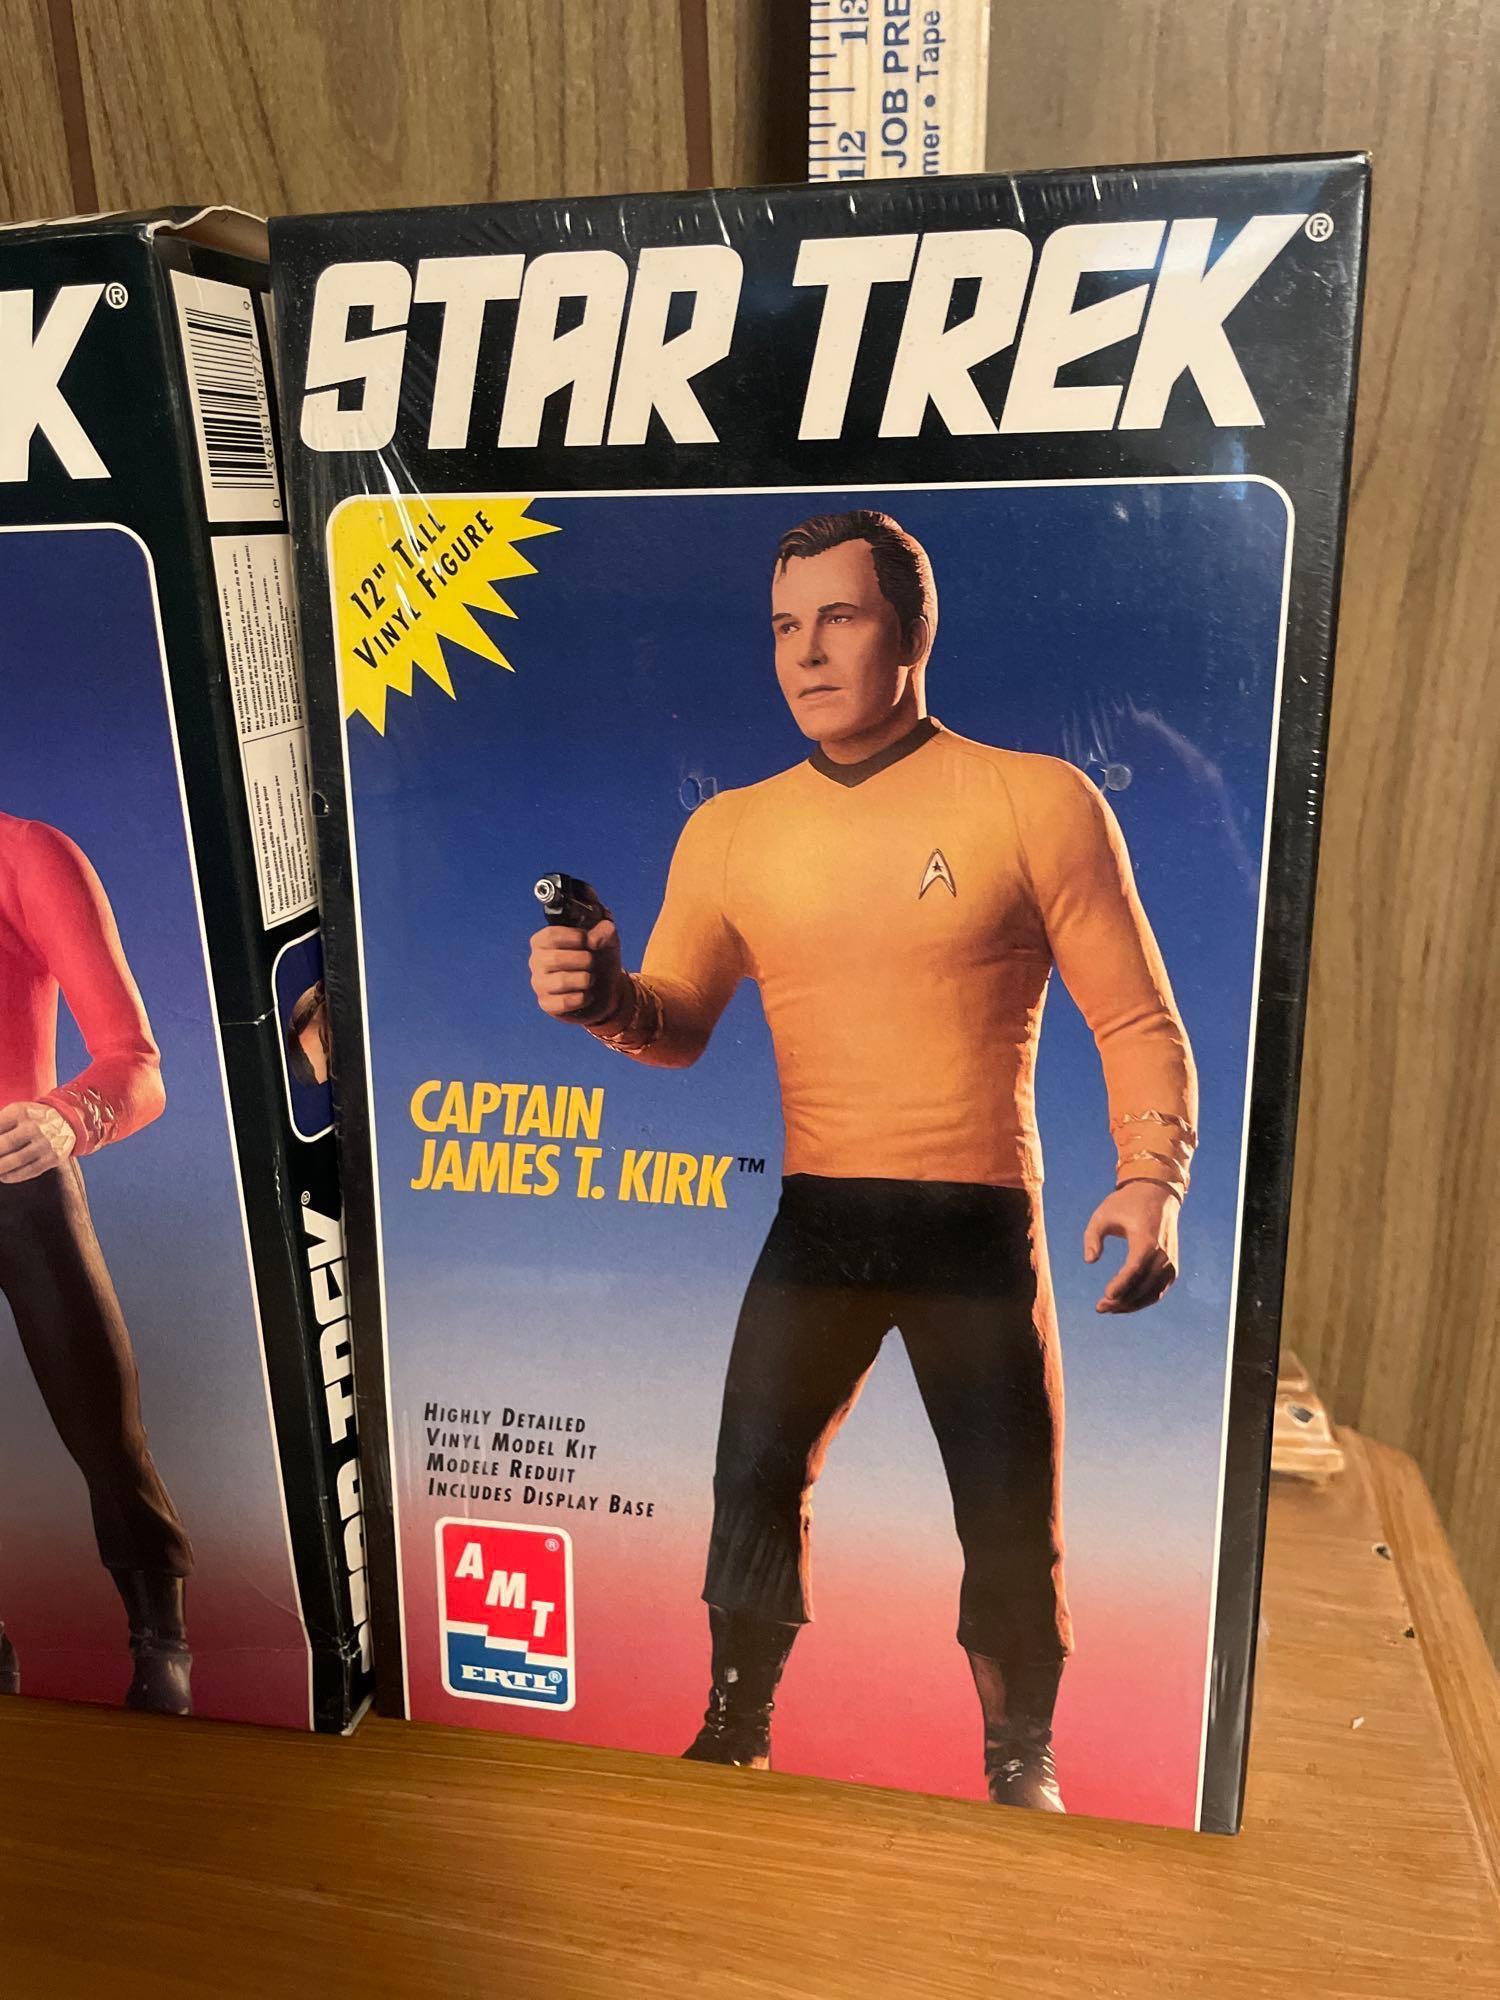 Vtg Ertl Star Trek Model Kits